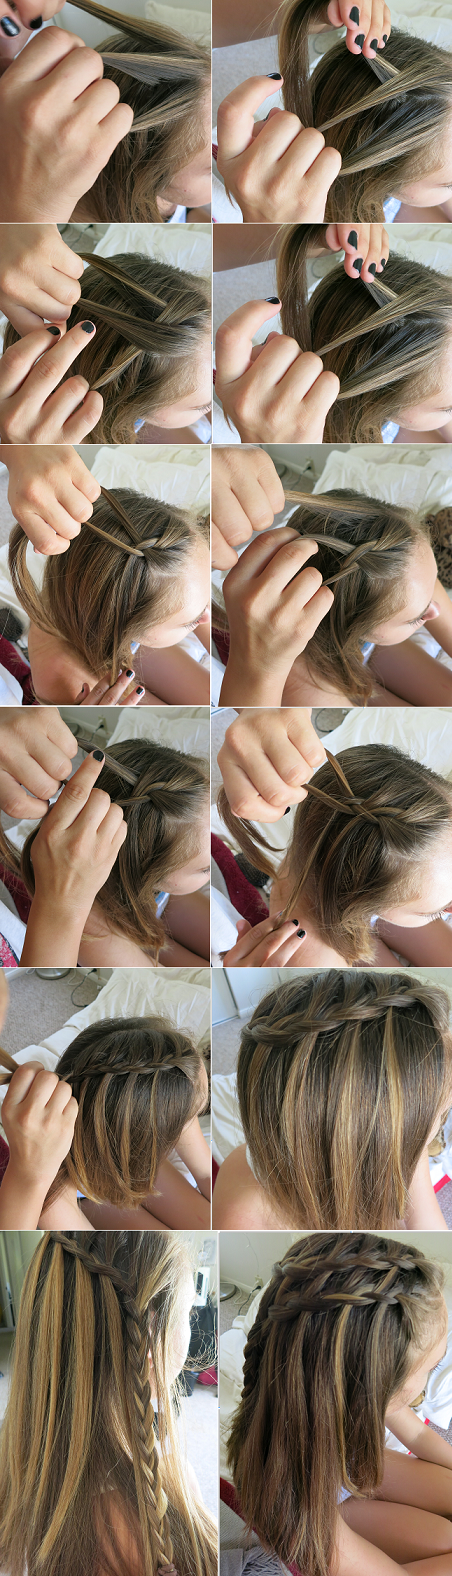 Для початку слід розчесати волосся і зробити проділ косого типу;   Після виділення невеликої ділянки, поділити його на три частини і плести косу, залишаючи нові пасма звисати, як зазначено на фото нижче: